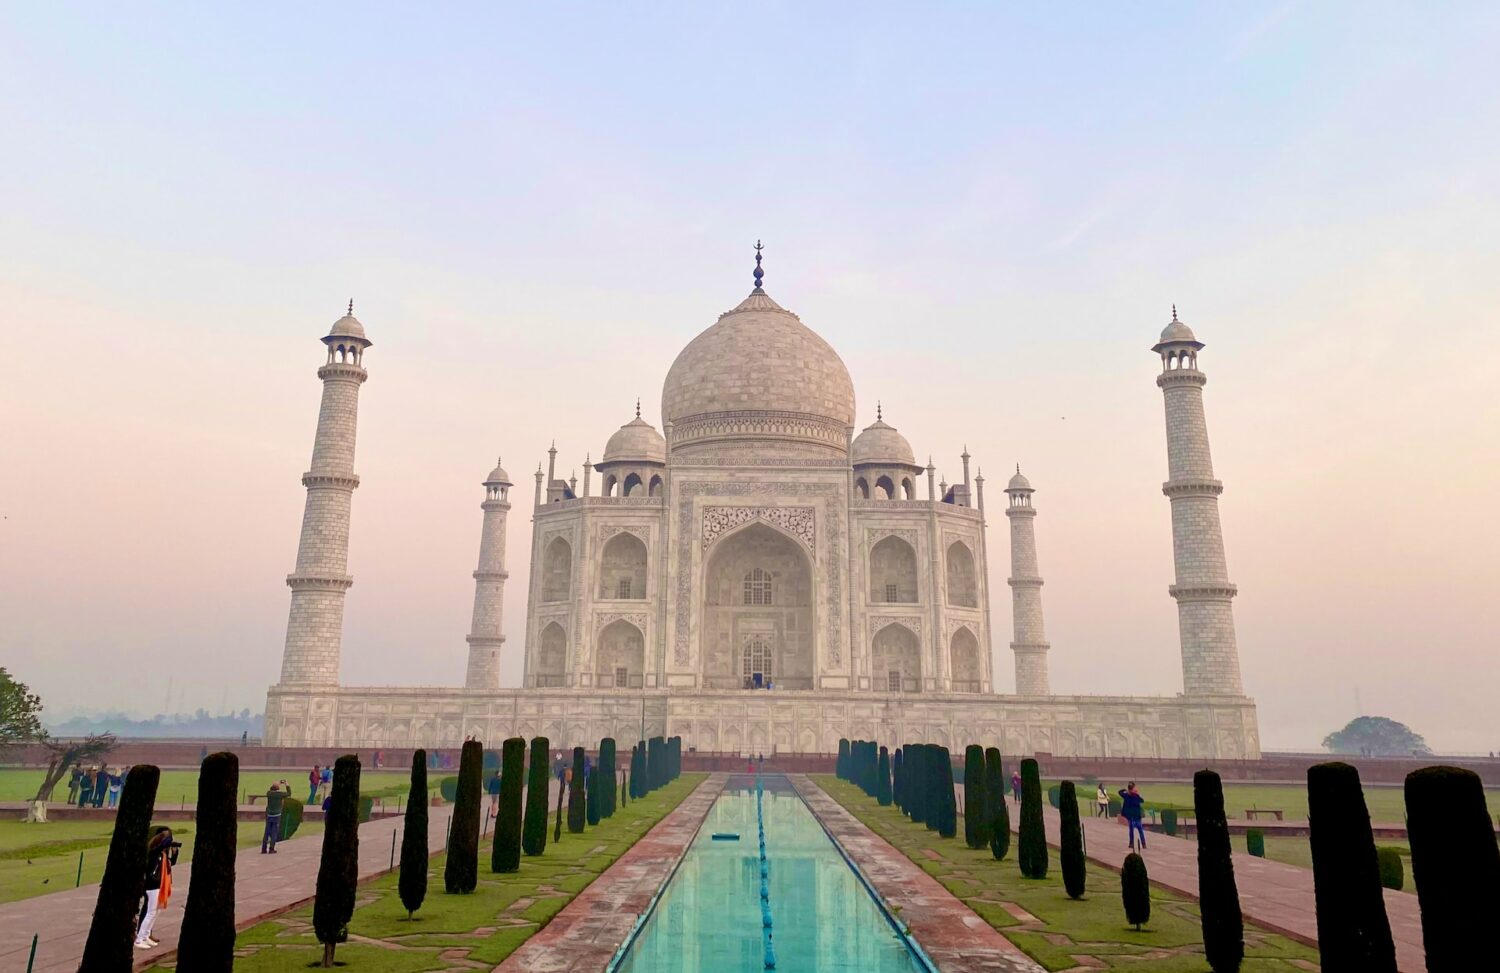 O Taj Mahal é um prédio branco de concreto. Em frente a ele há sua imagem espelhada em água. - Foto: Mike Swigunski via Unsplash